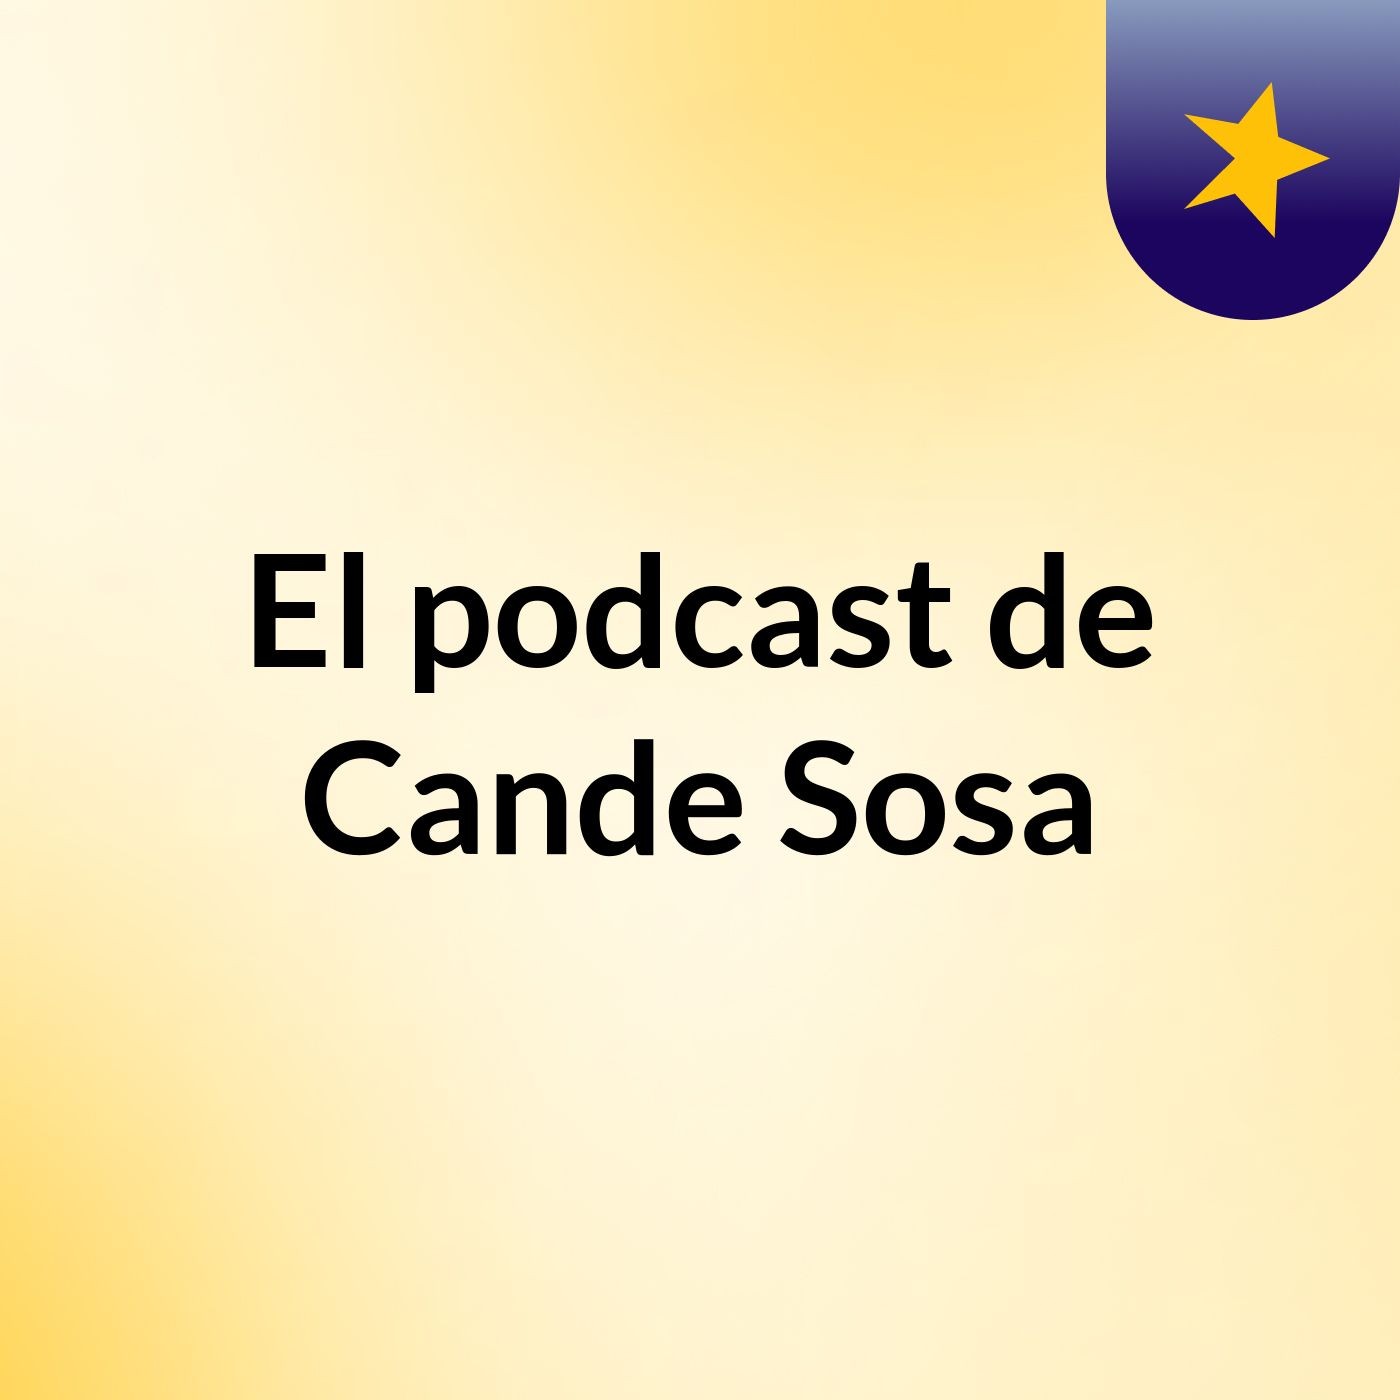 El podcast de Cande Sosa